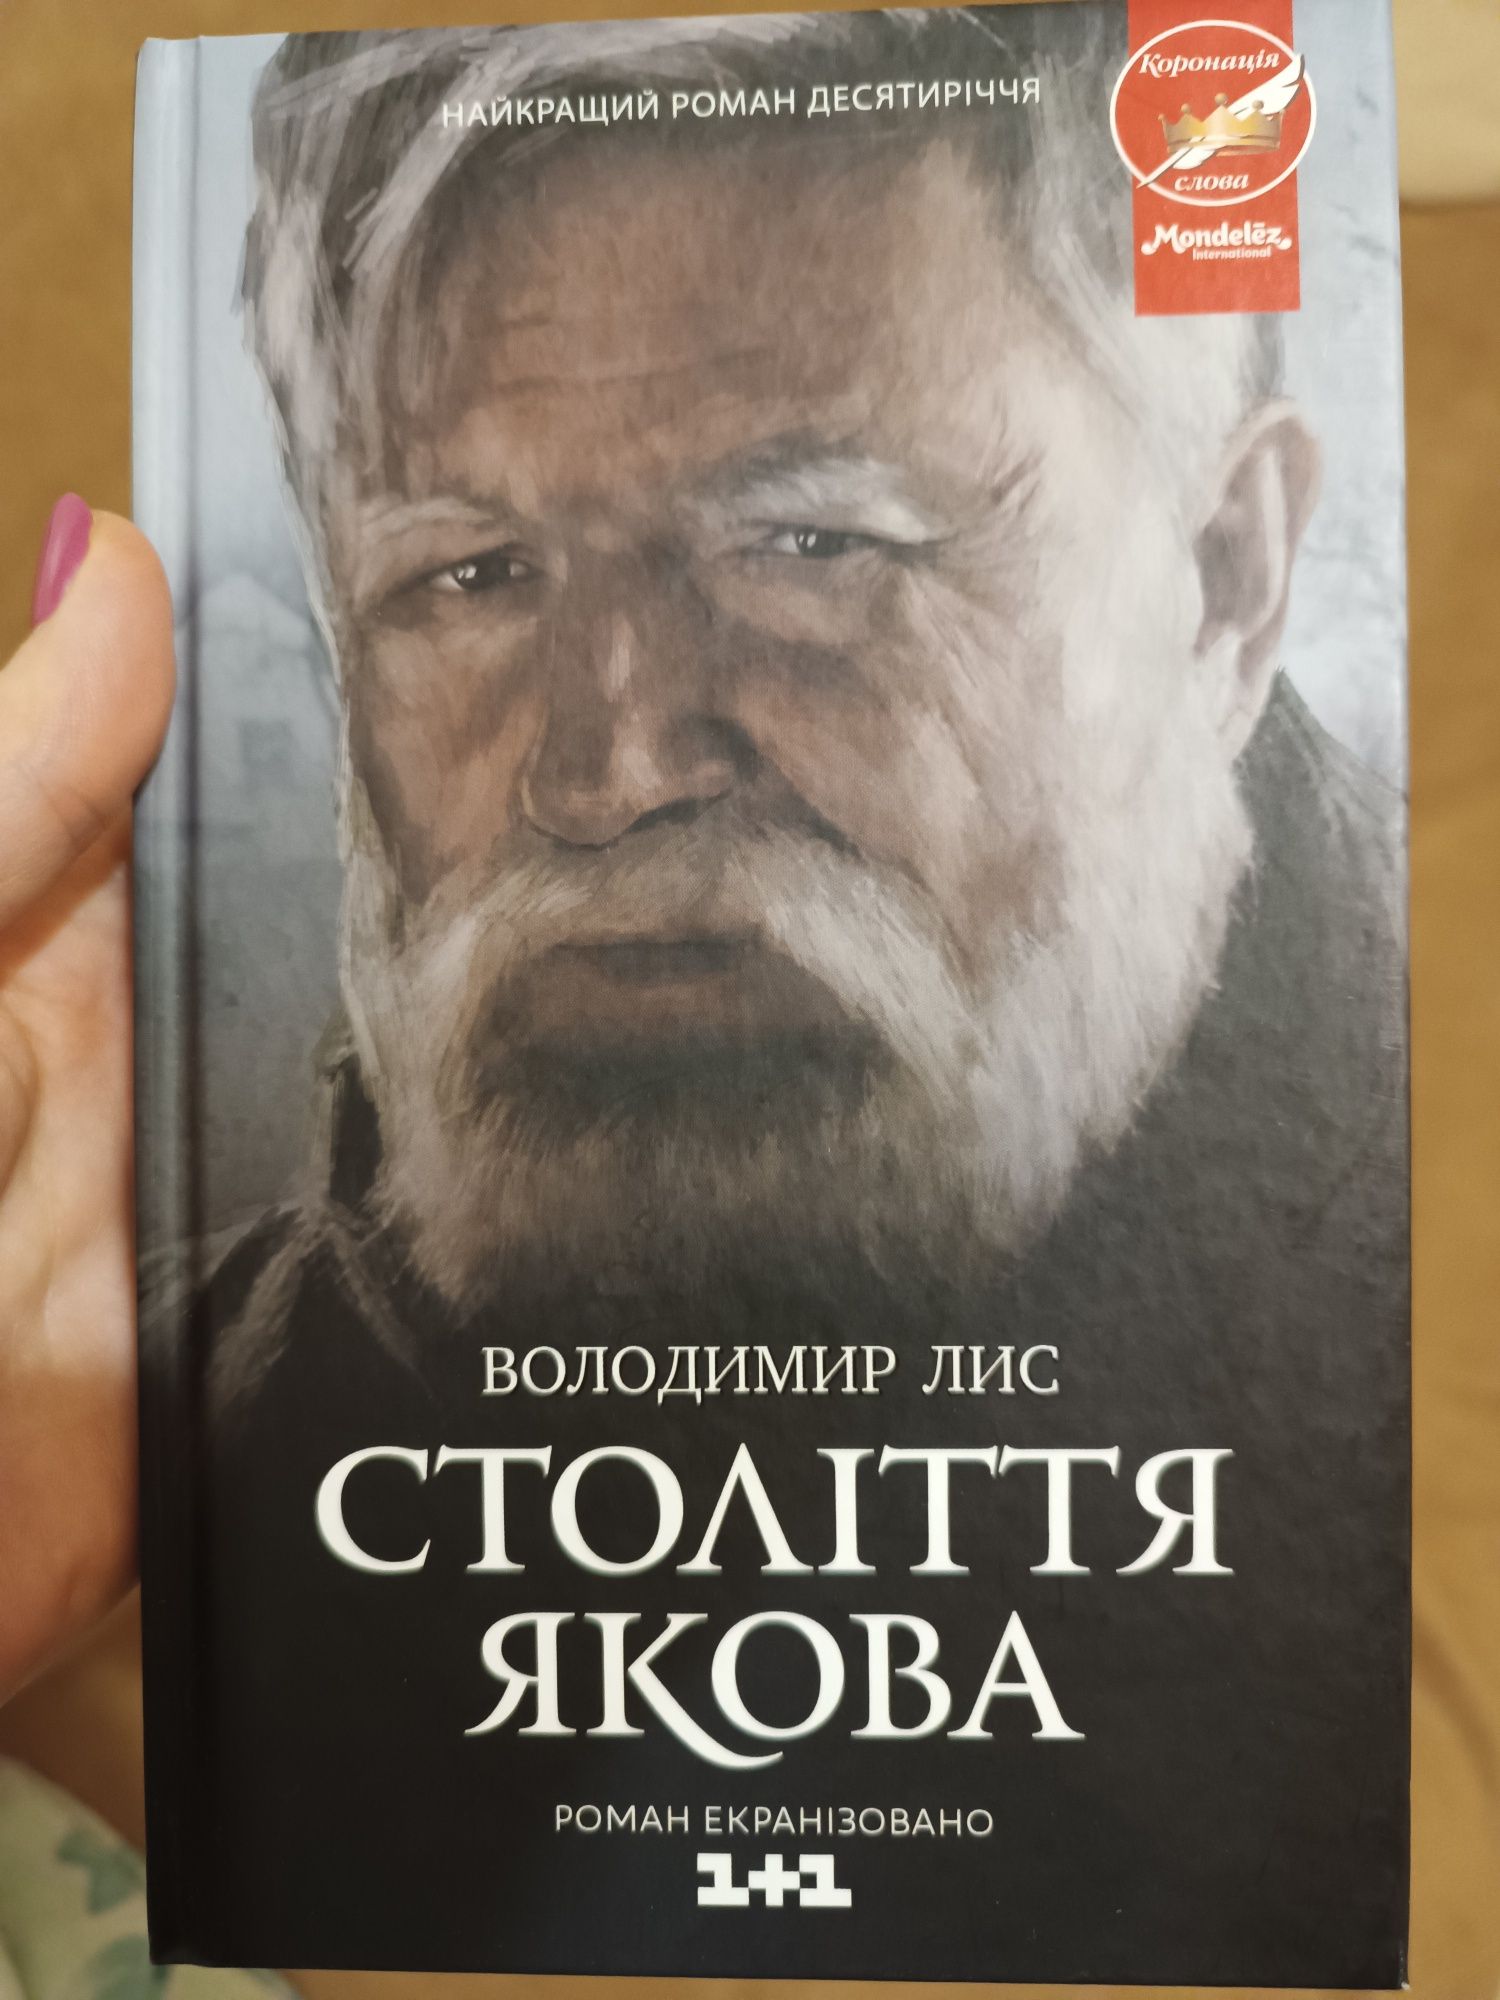 Підбірка творів Володимира Лиса